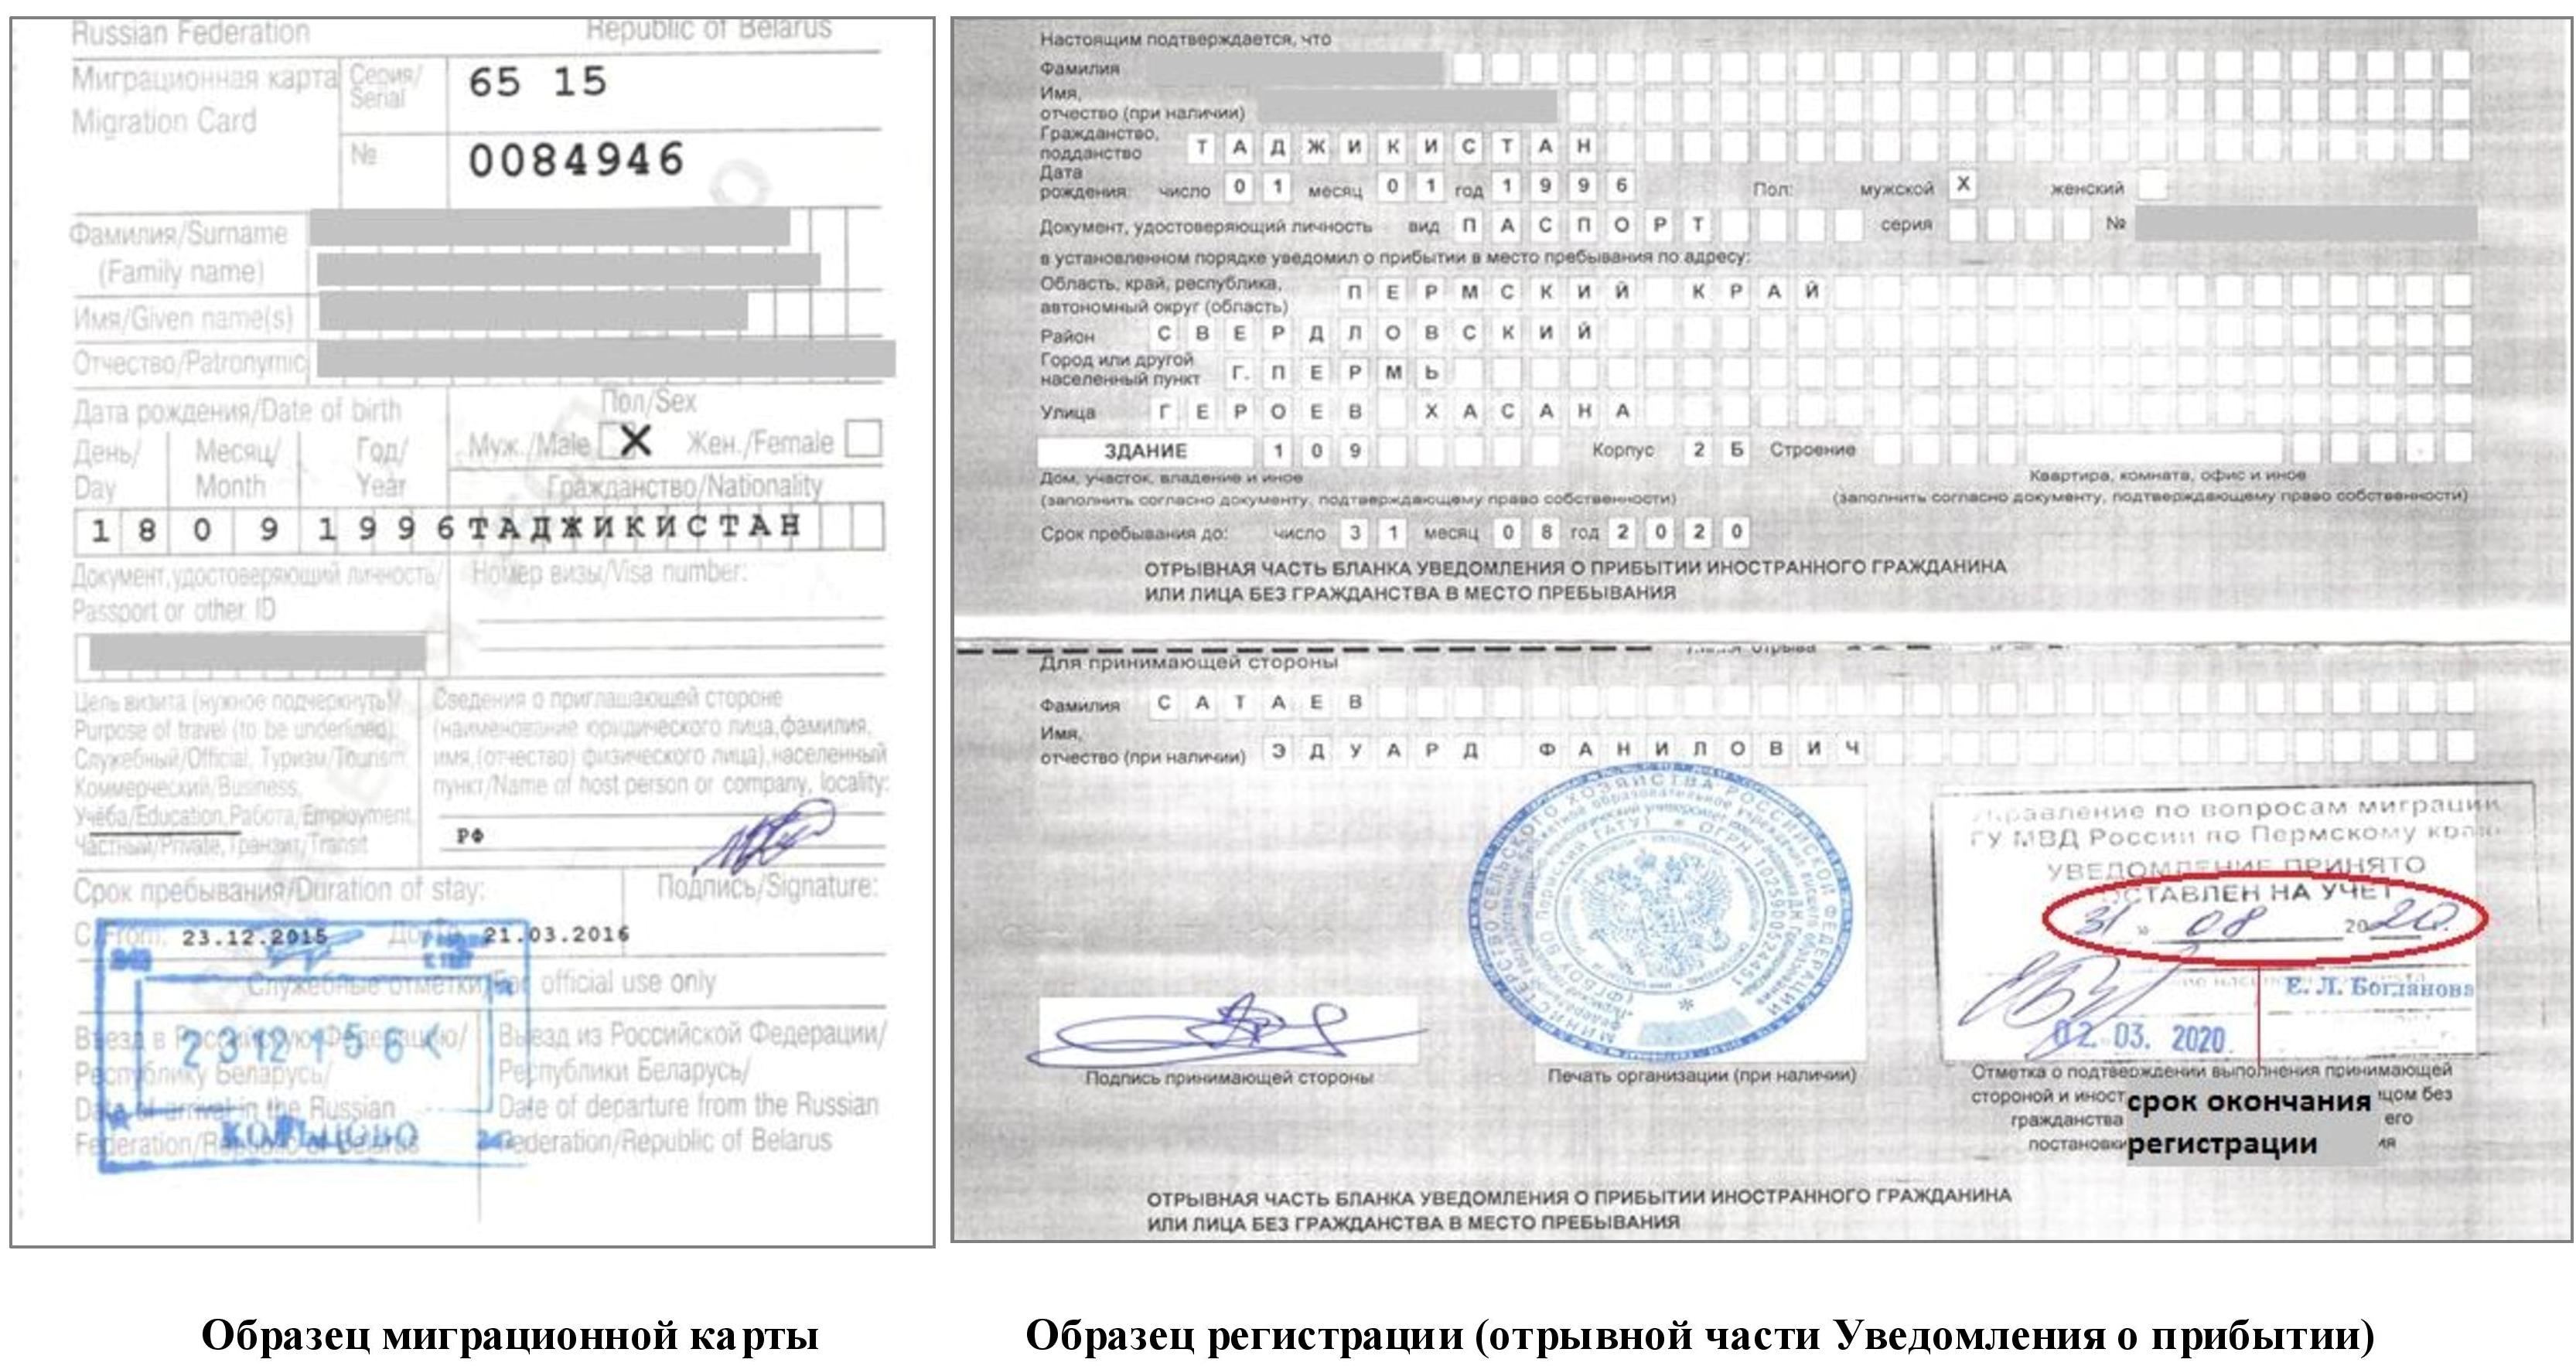 сроки регистрации иностранных граждан на территории рф